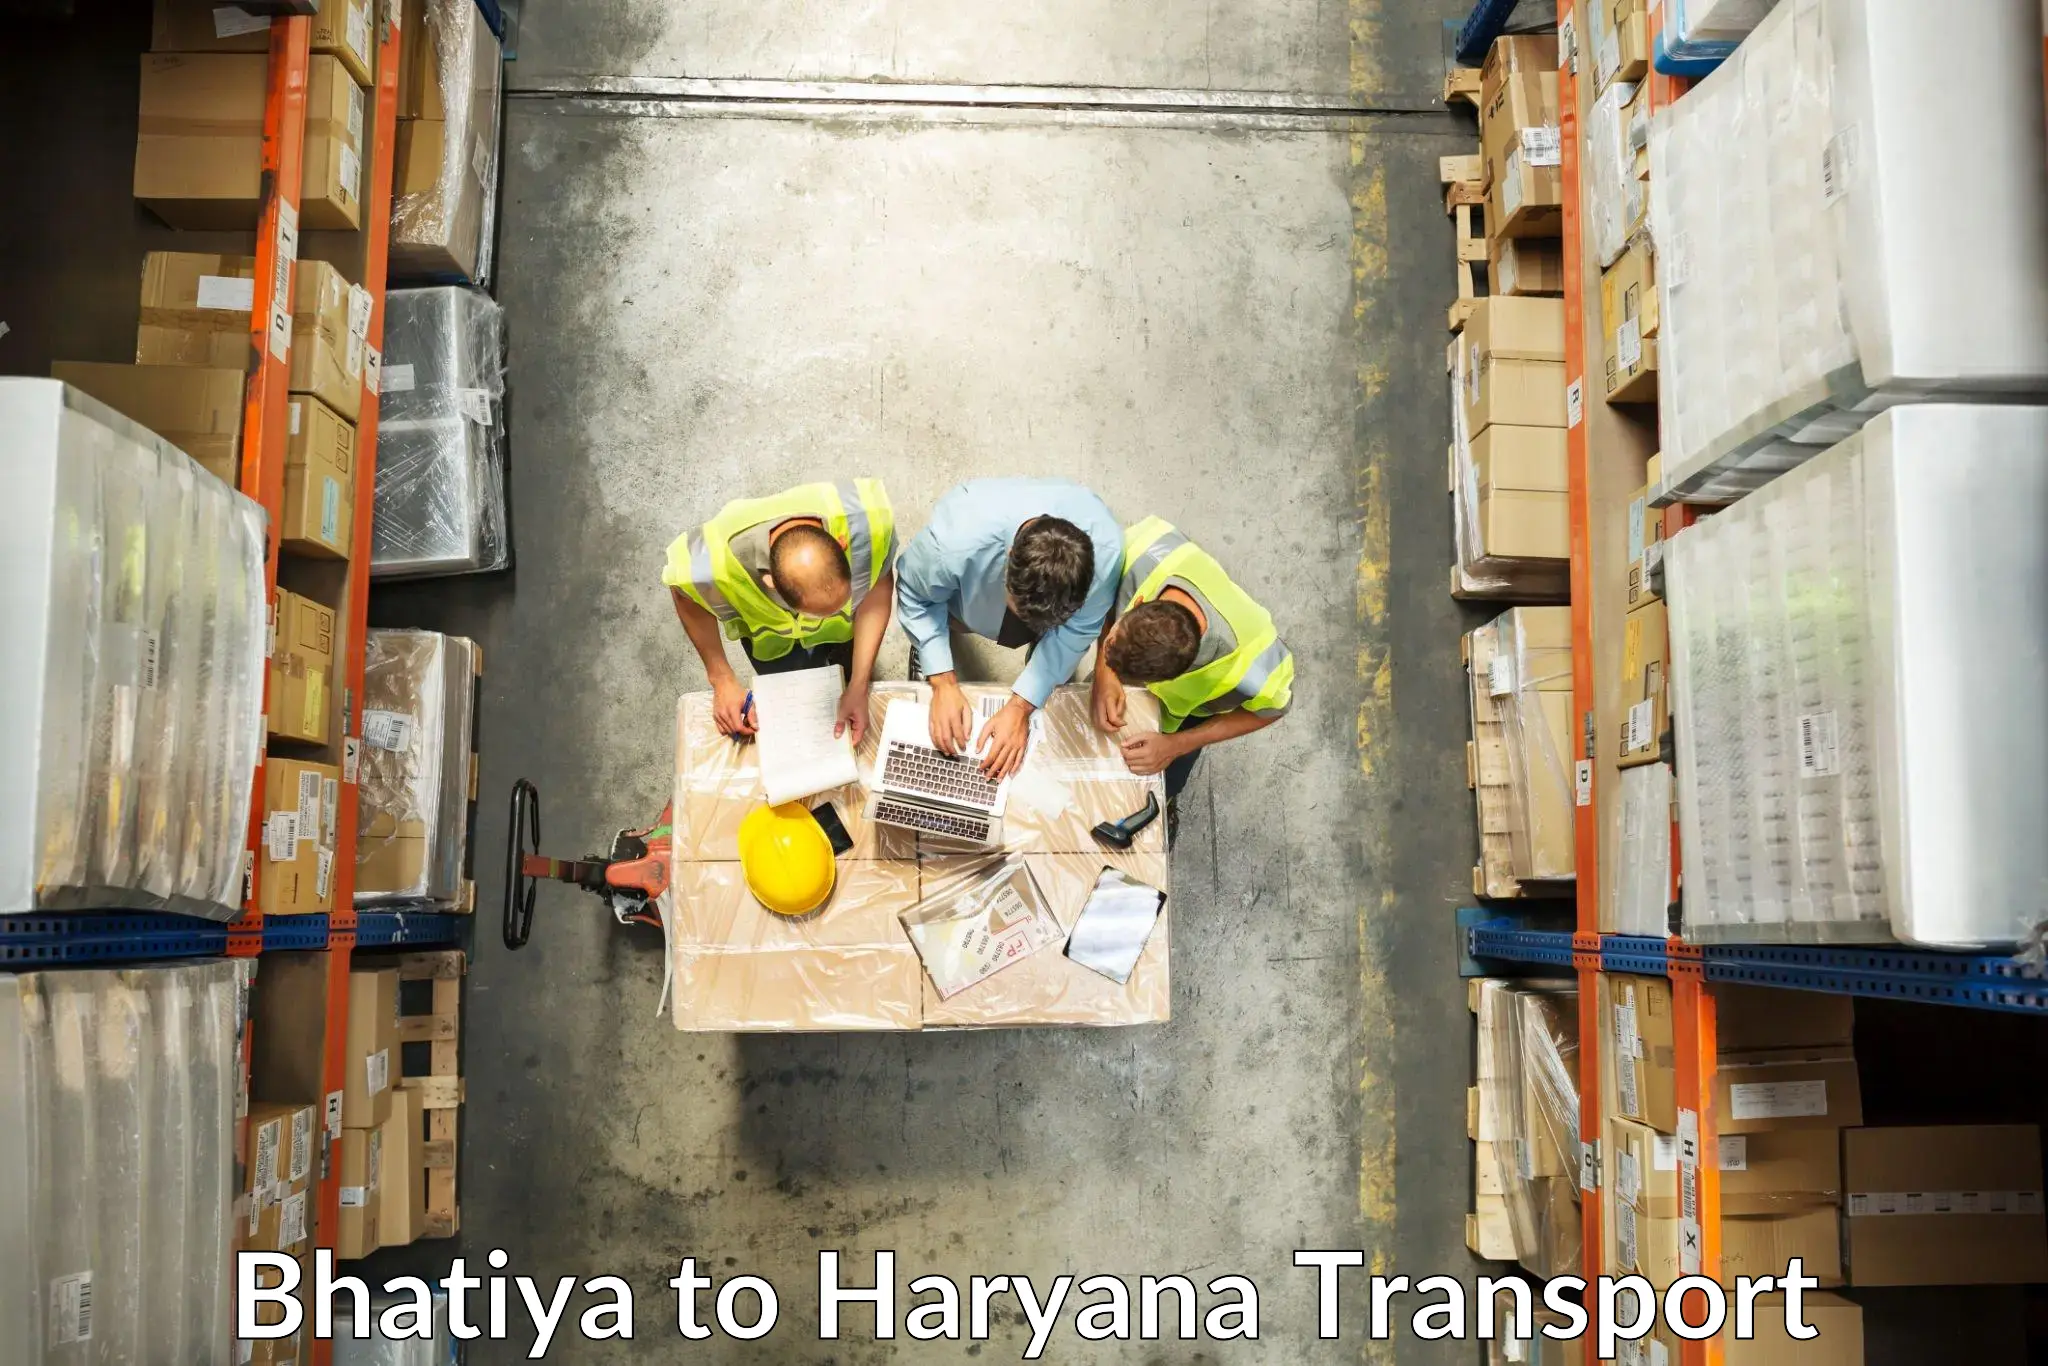 Truck transport companies in India Bhatiya to Kurukshetra